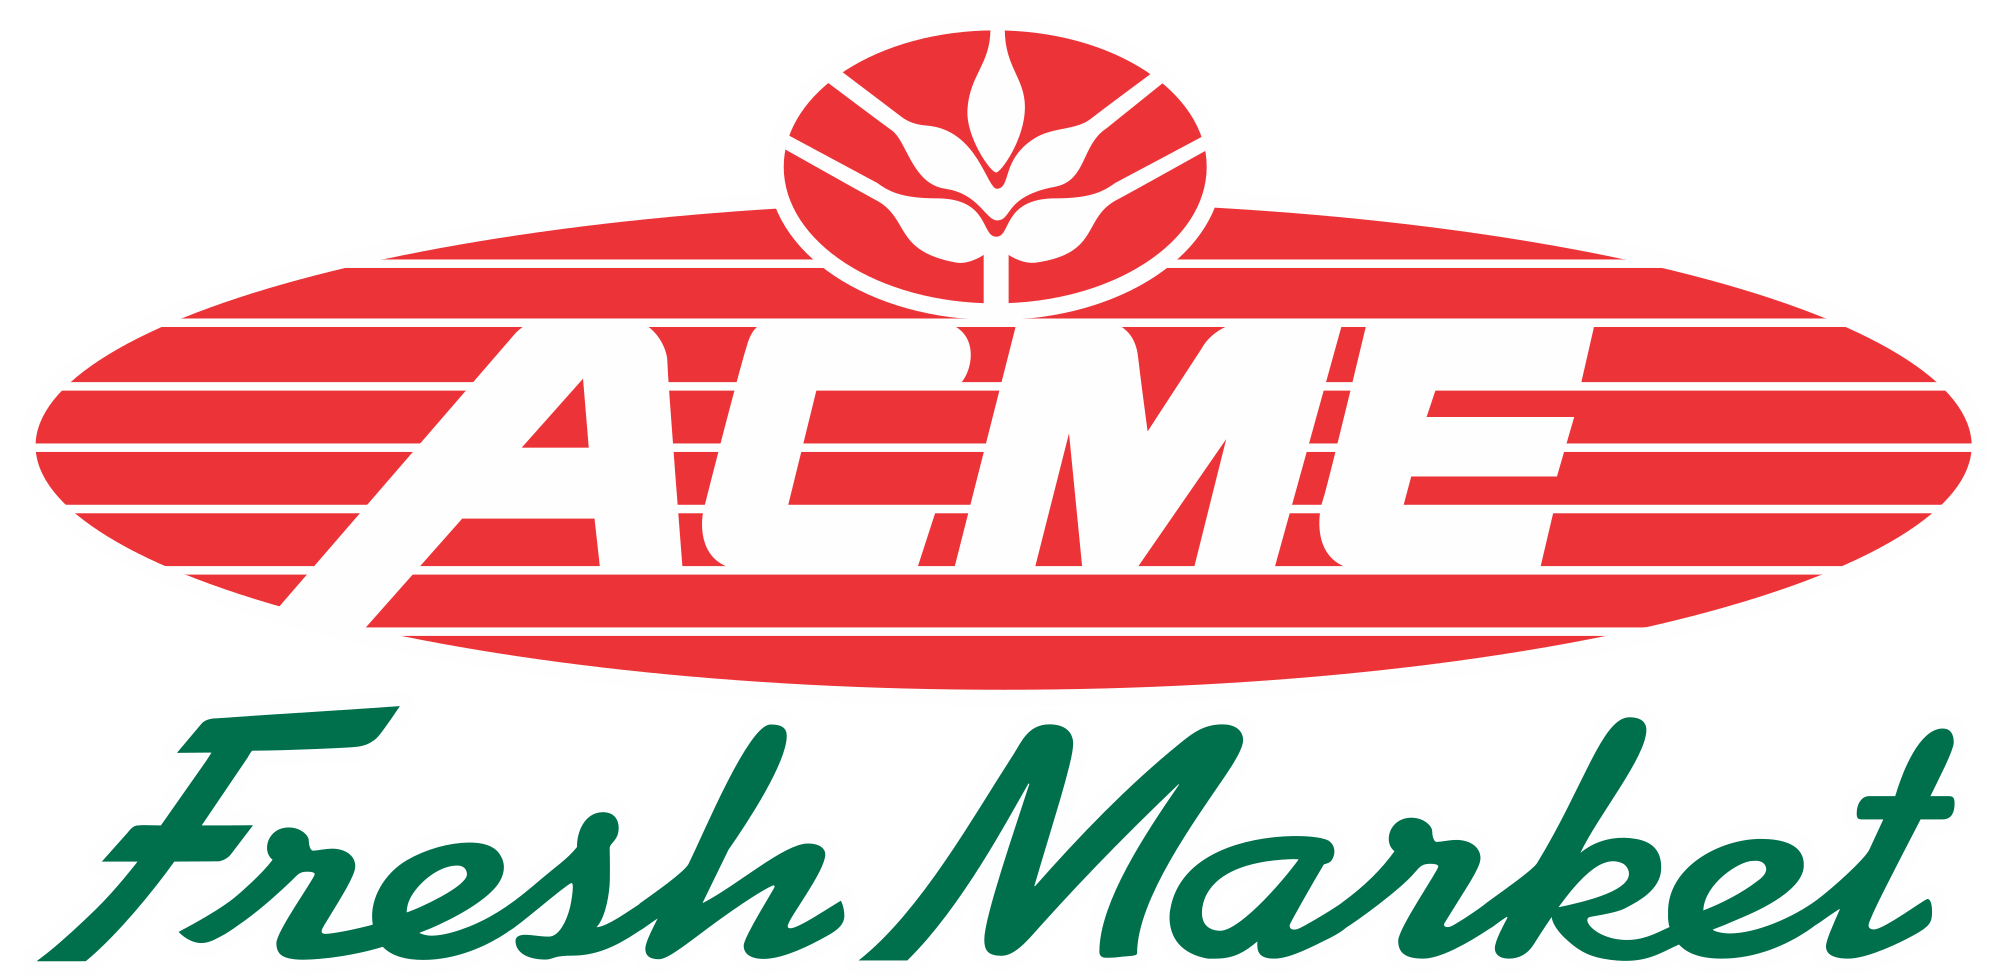 Fresh Market Logo - Acme Fresh Market logo.svg